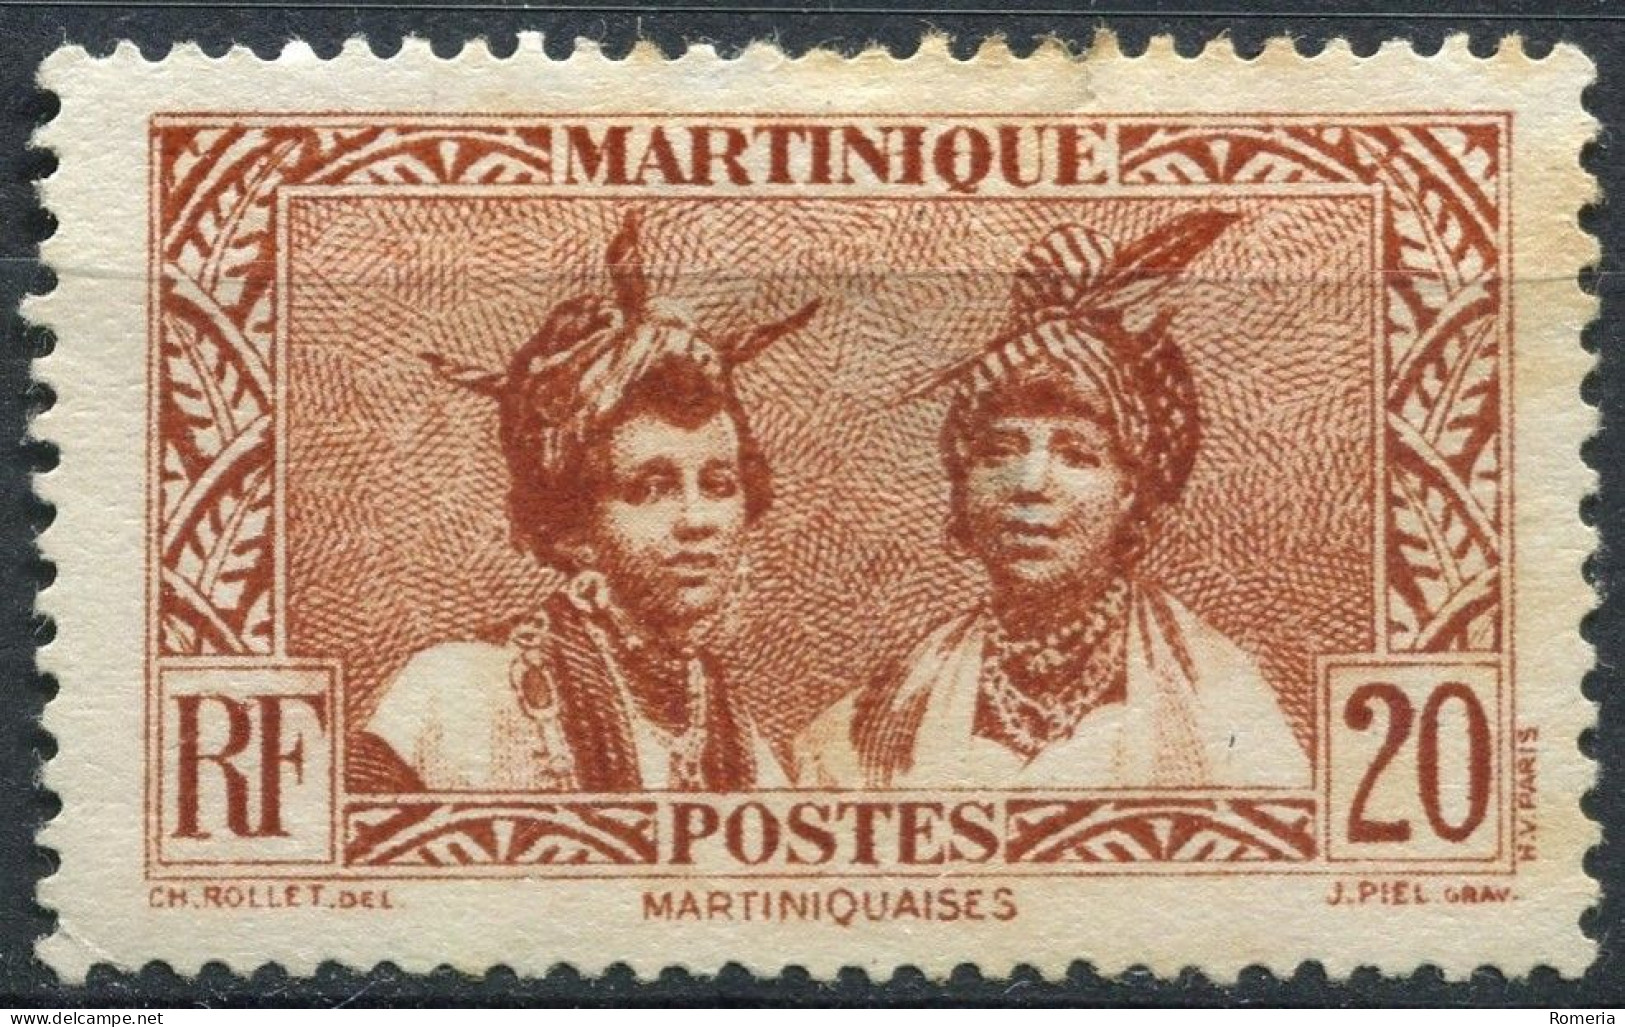 Martinique - 1908 -> 1947 - Lot timbres *TC et oblitérés - normaux, Poste Aérienne et Taxes - Nºs dans description